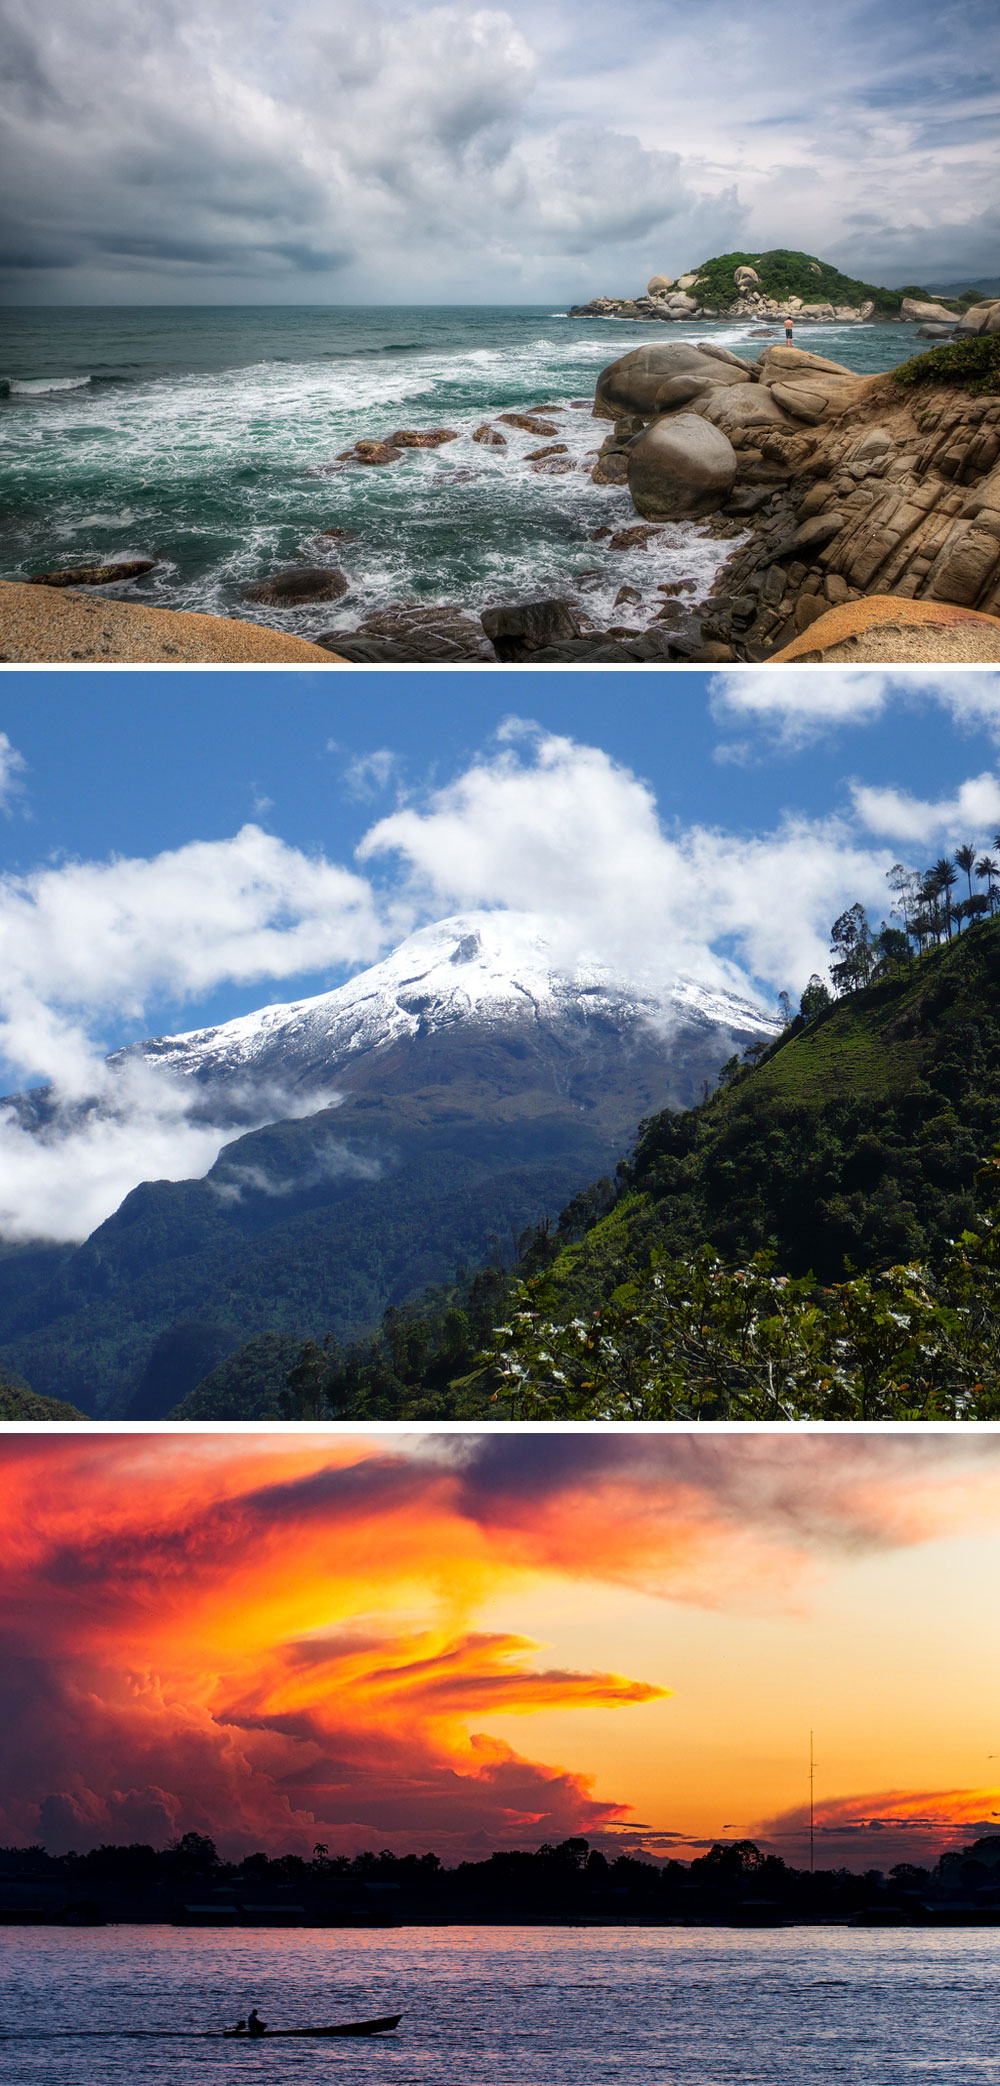 Fakta: Colombias landskab består af hav, bjerge, floder og regnskov.